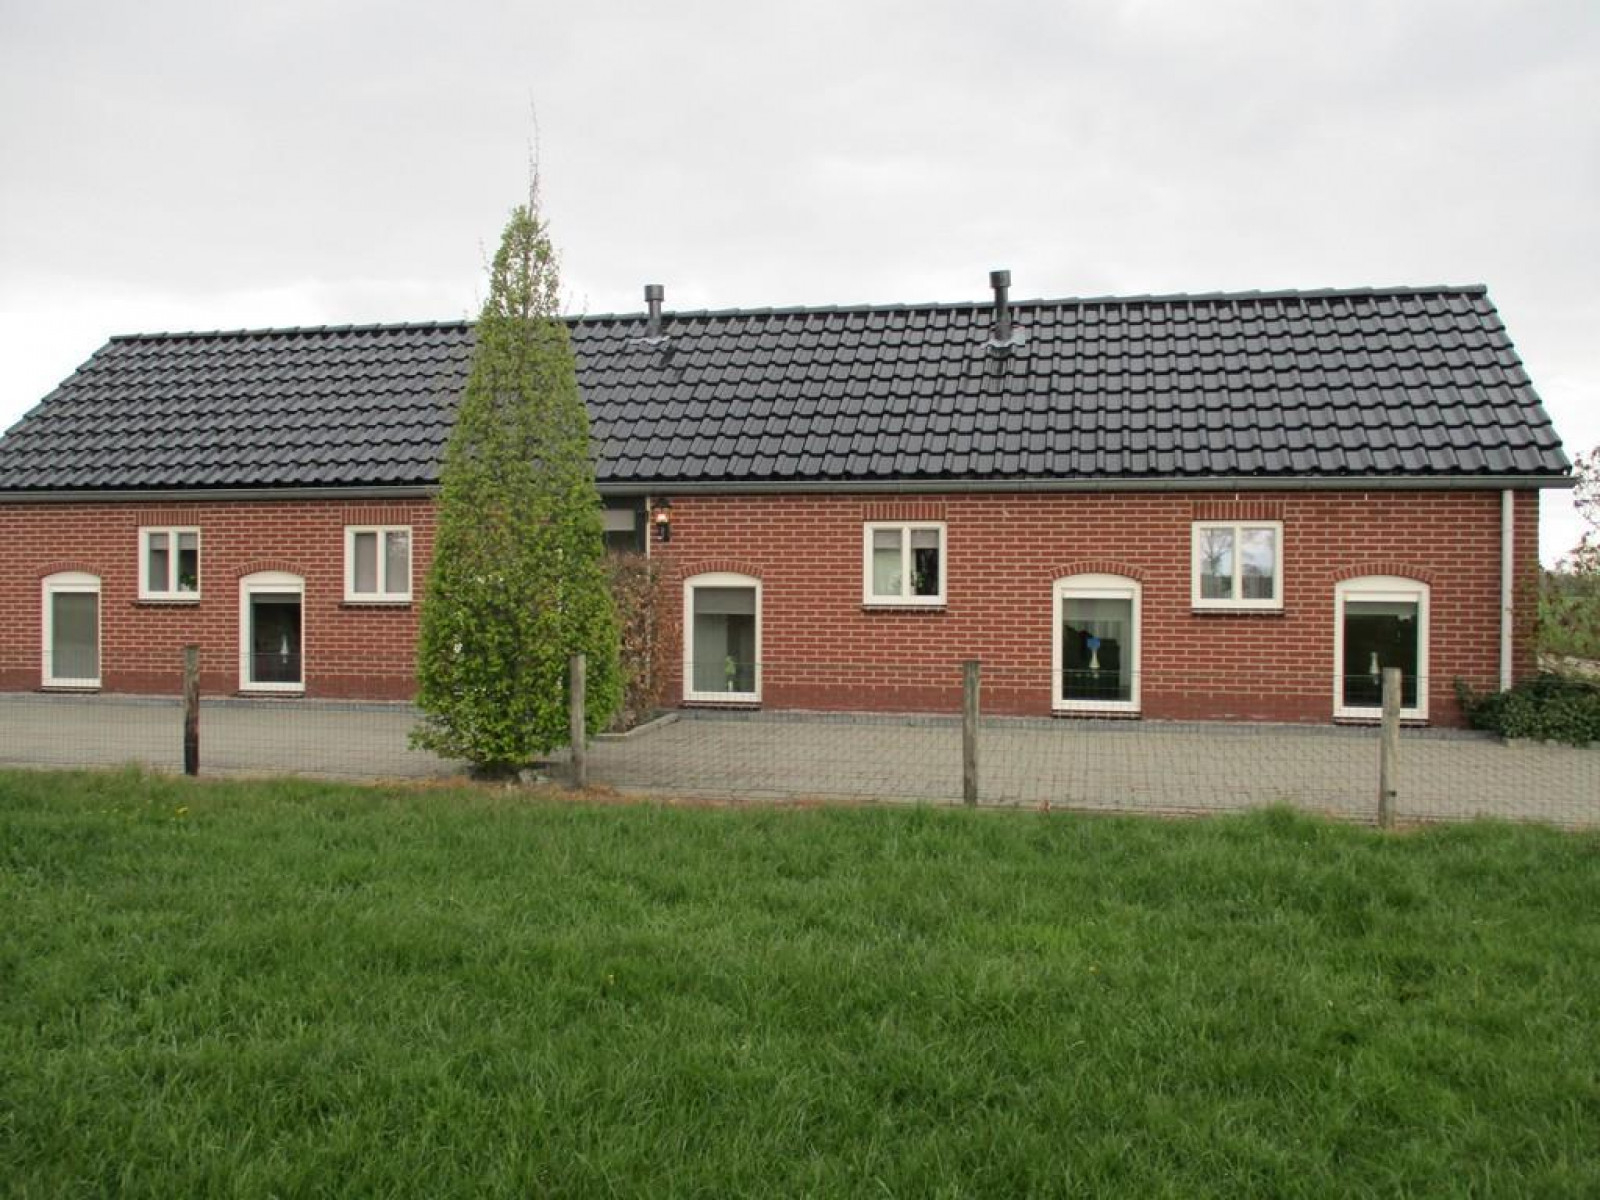 Heerlijkehuisjes.nl Vakantiehuis voor 4 personen in het midden van weilanden in Haarle-Hellendoorn, Overijssel - Nederland - Europa - Haarle-Hellendoorn